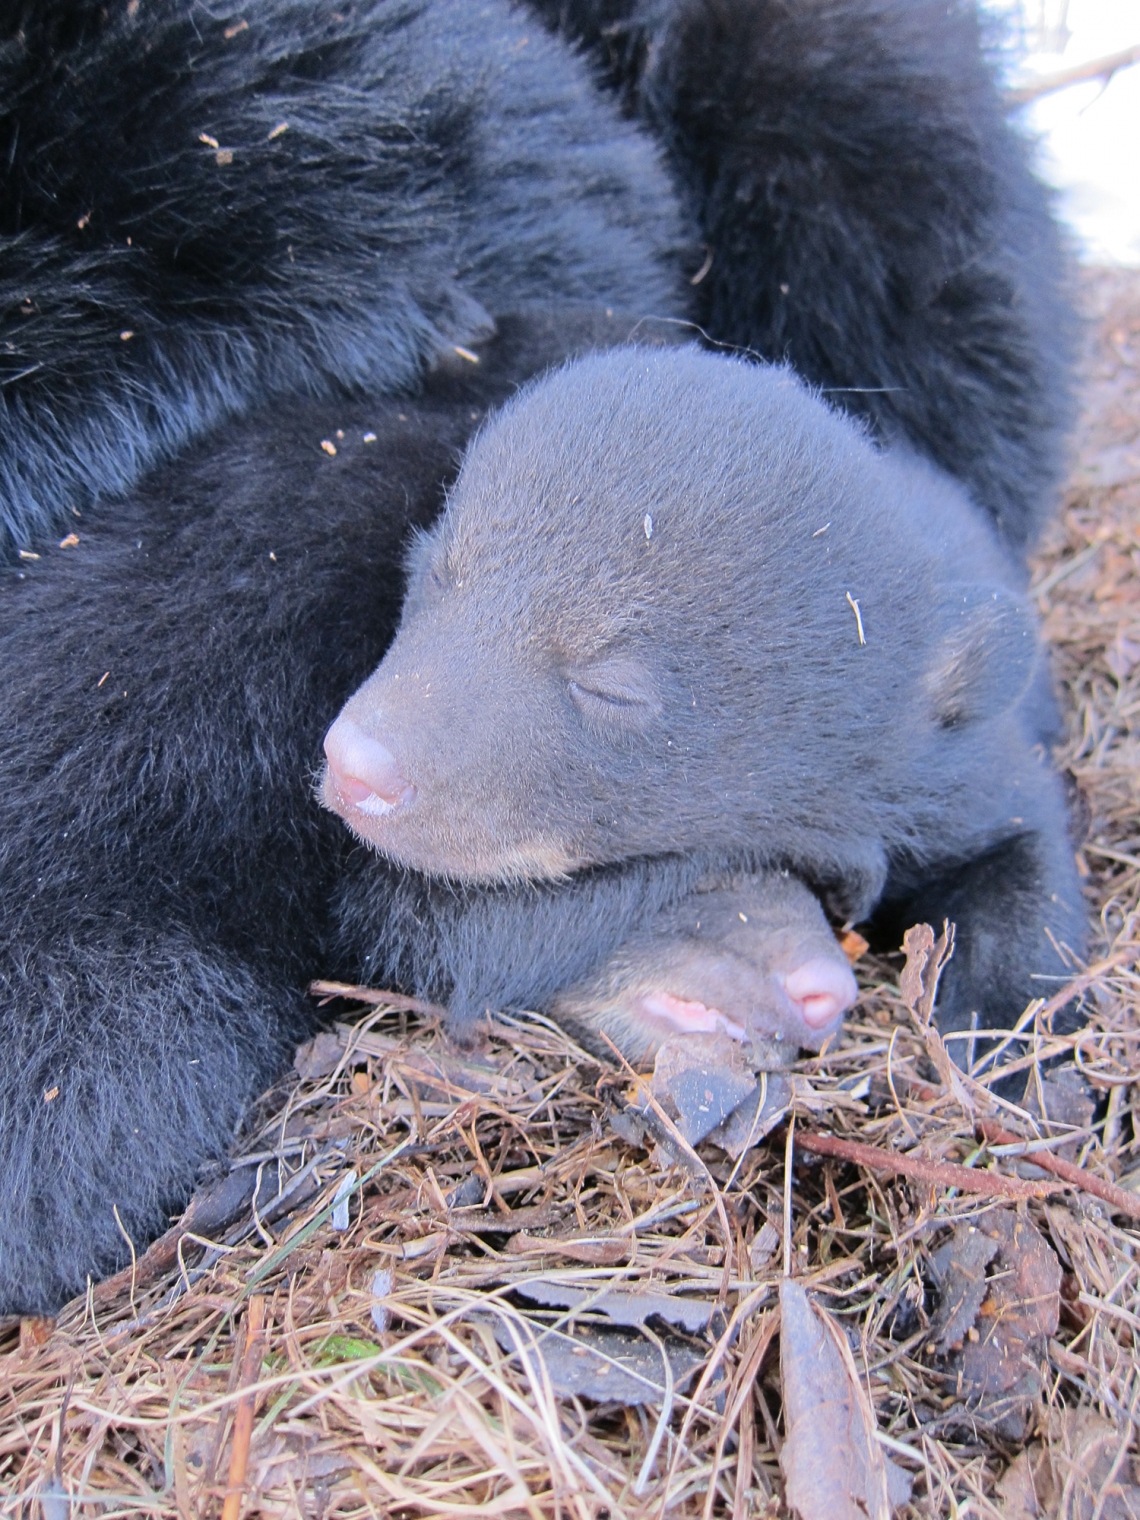 American black bear_U americanus_Minnesota_young cubs in den before opening eyes_D Garshelis